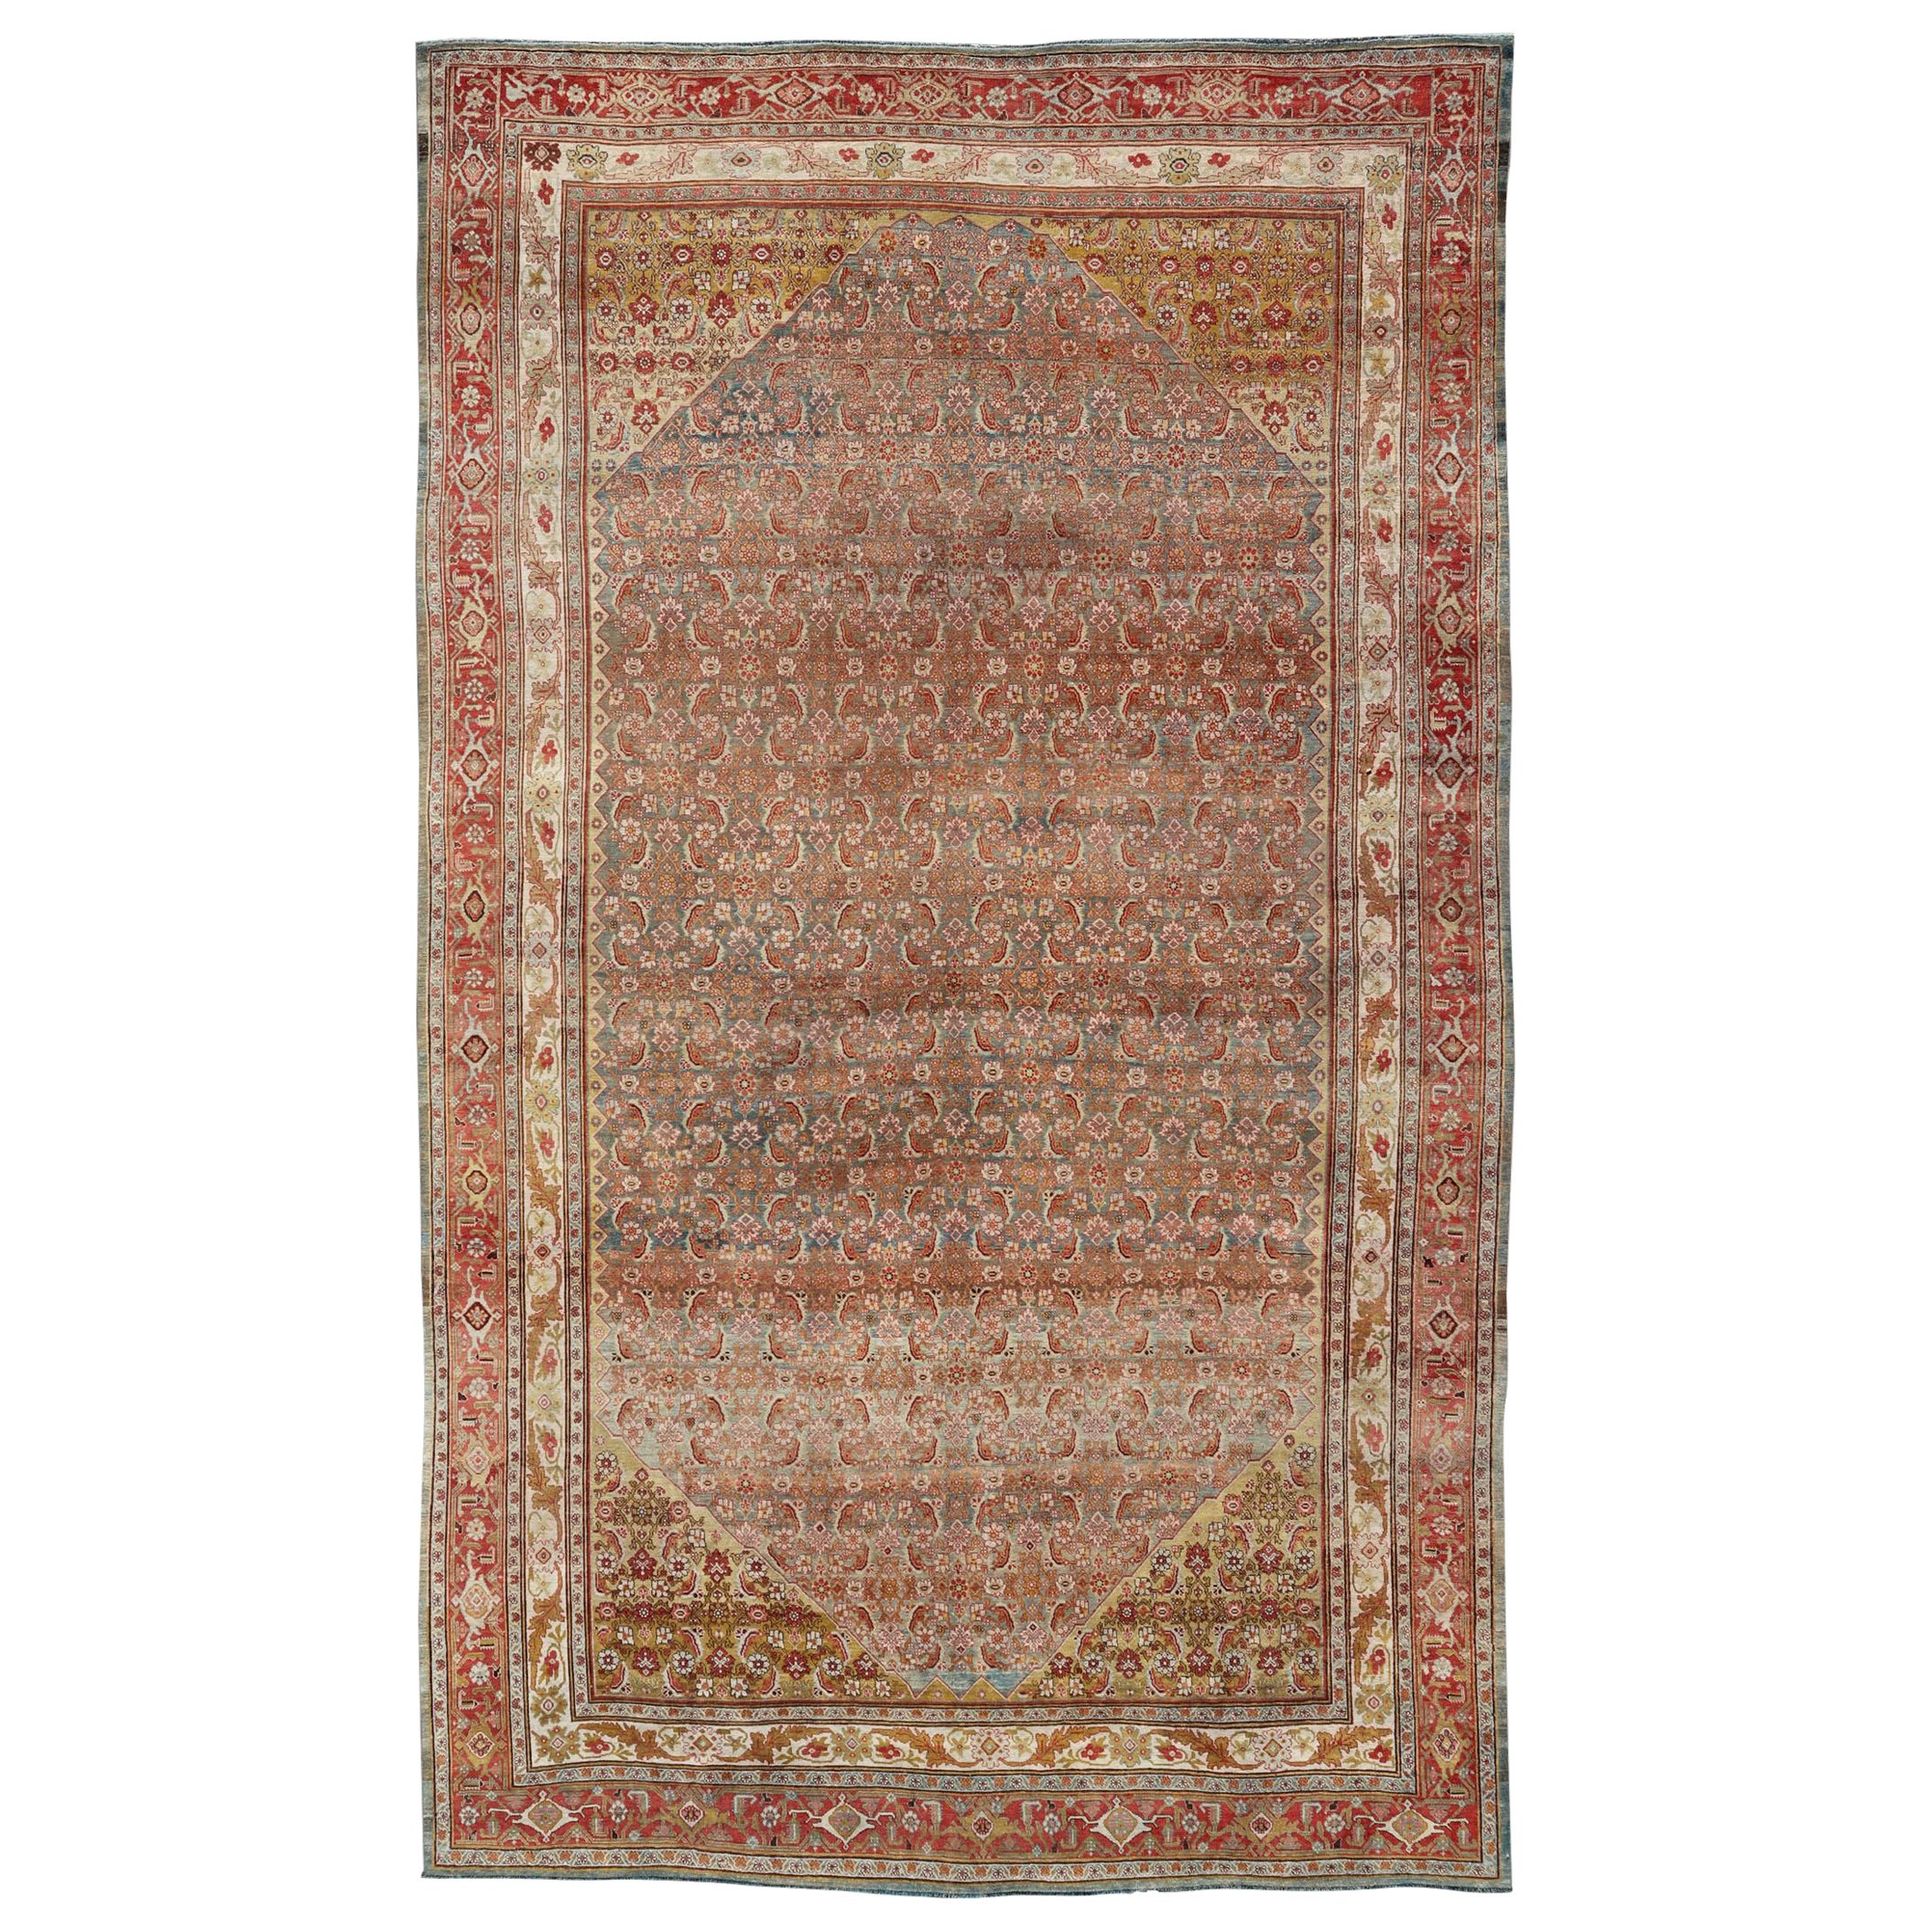 Large Antique Persian Bidjar Rug with Herati Design in Soft tones & Multi Colors